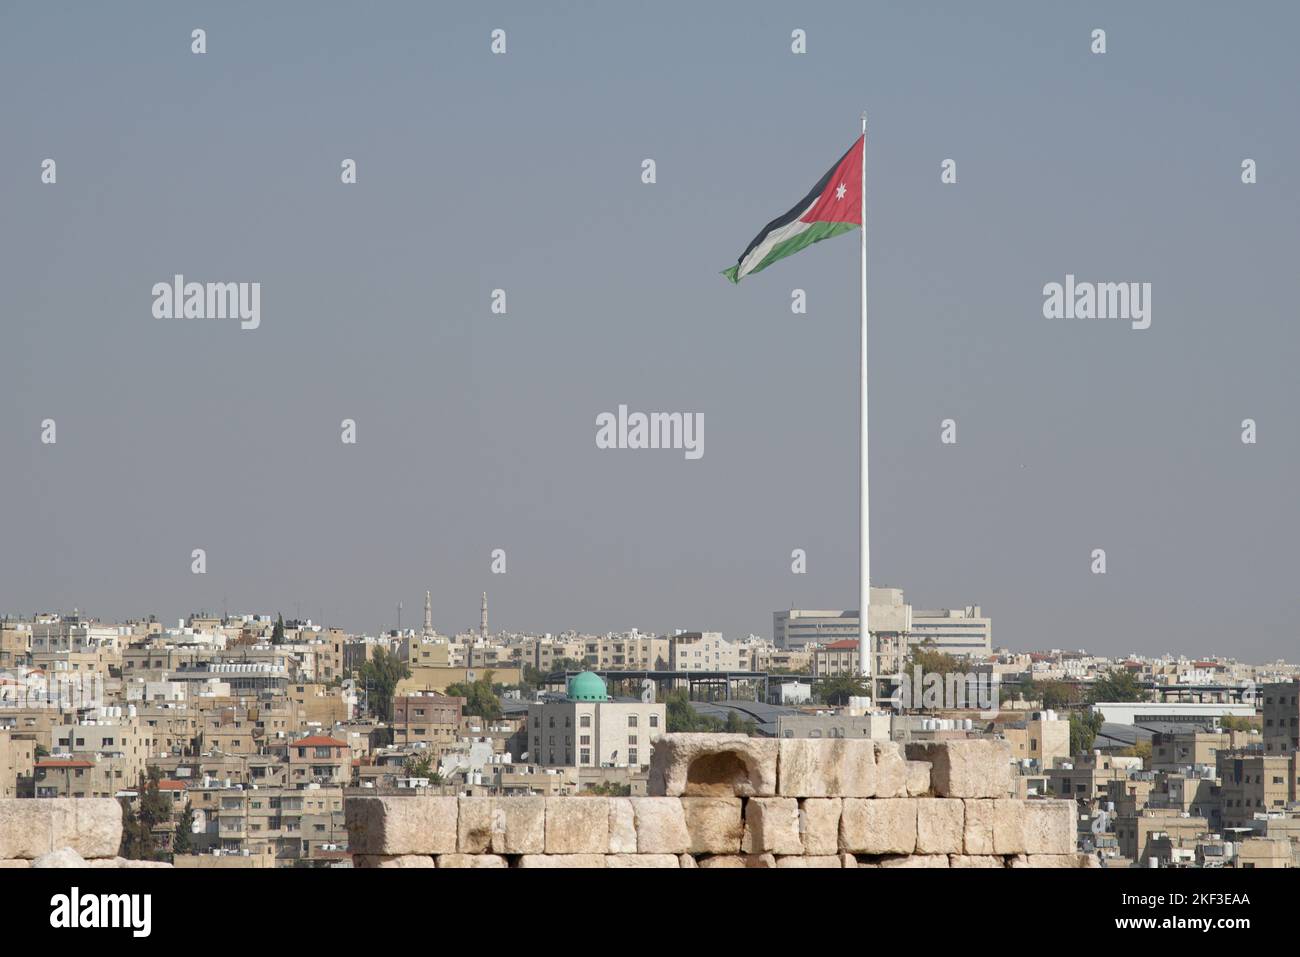 Imágenes cercanas de edificios en Amman, Jordania. Foto de stock